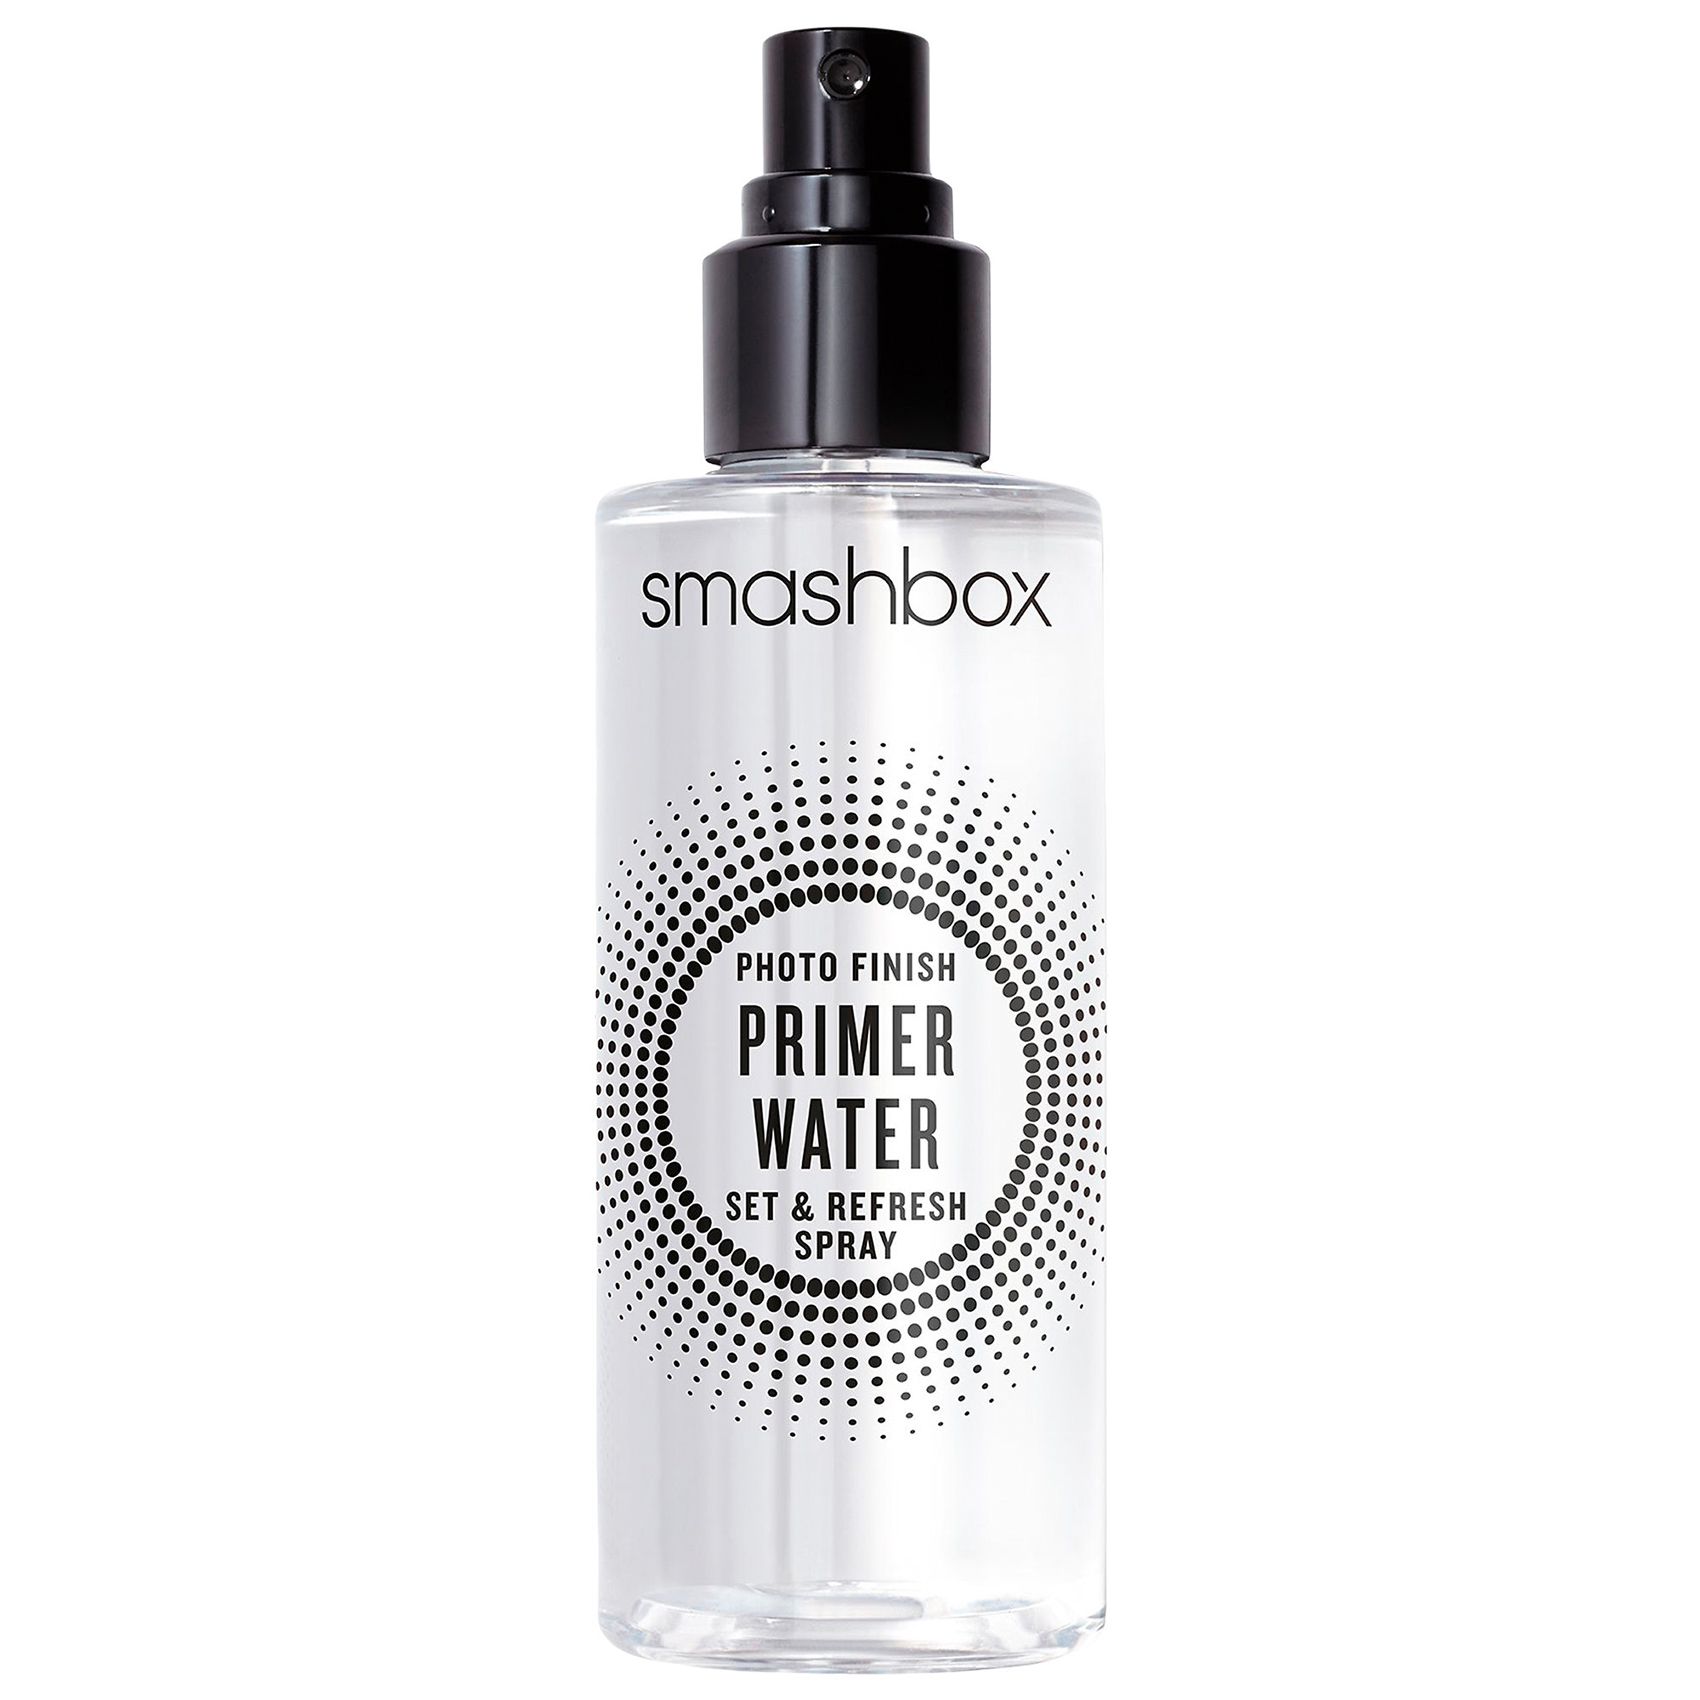 საუკეთესო წყალზე დაფუძნებული პრაიმერები: Smashbox Photo Finish Primer Water